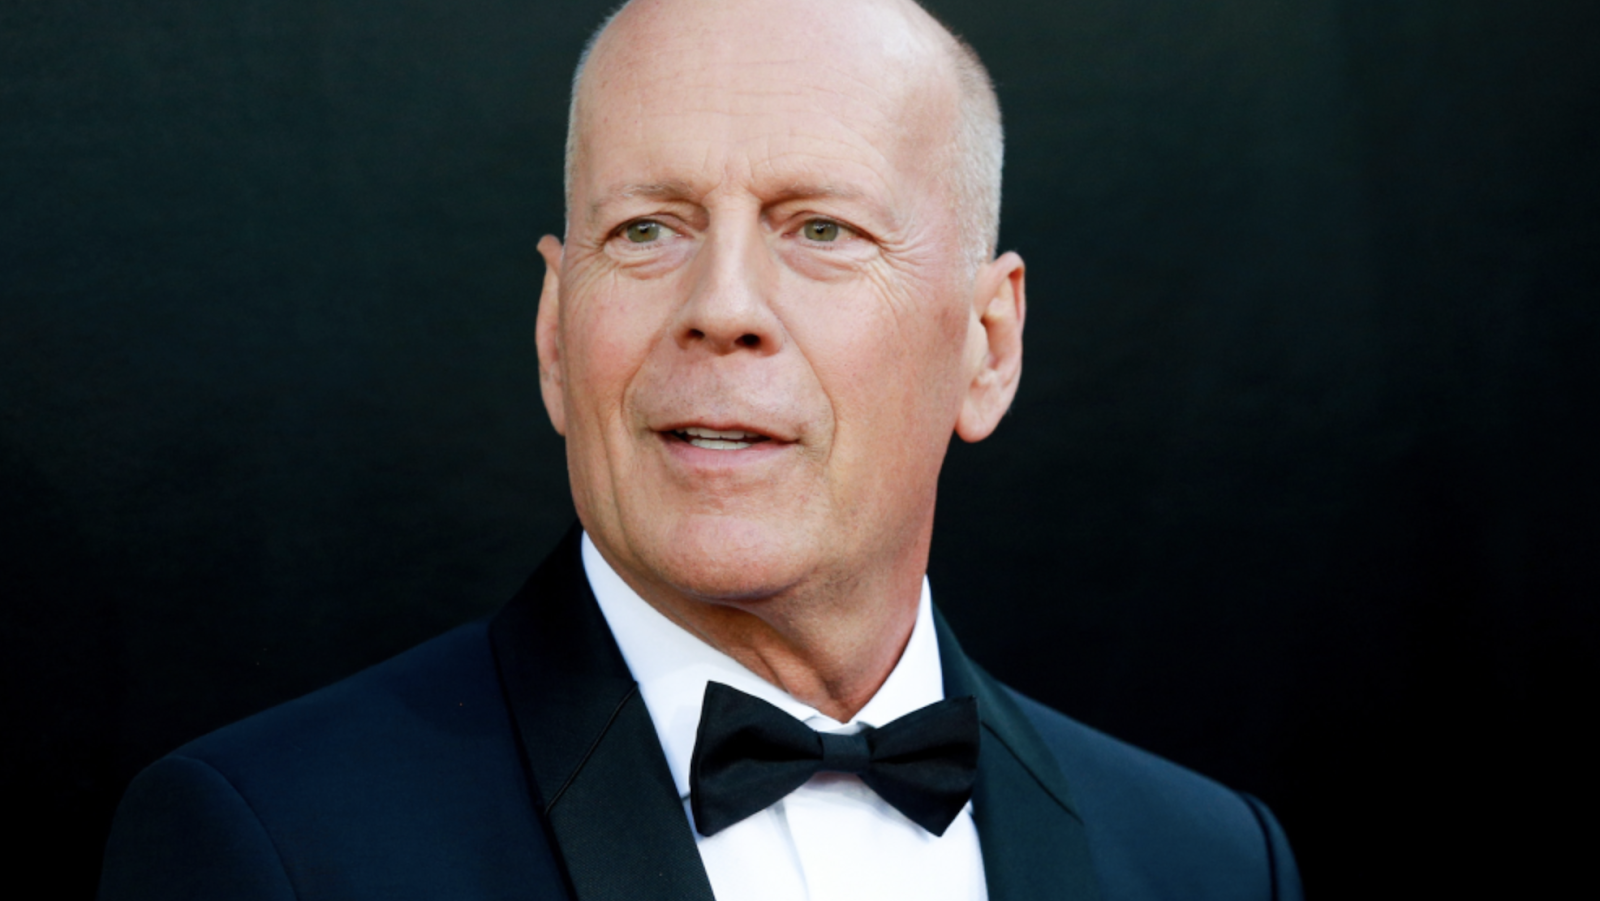 Bruce Willis en un fondo negro. Viste un traje de color azul marino con una camisa blanca abotonada, al centro tiene puesto un corbatín.